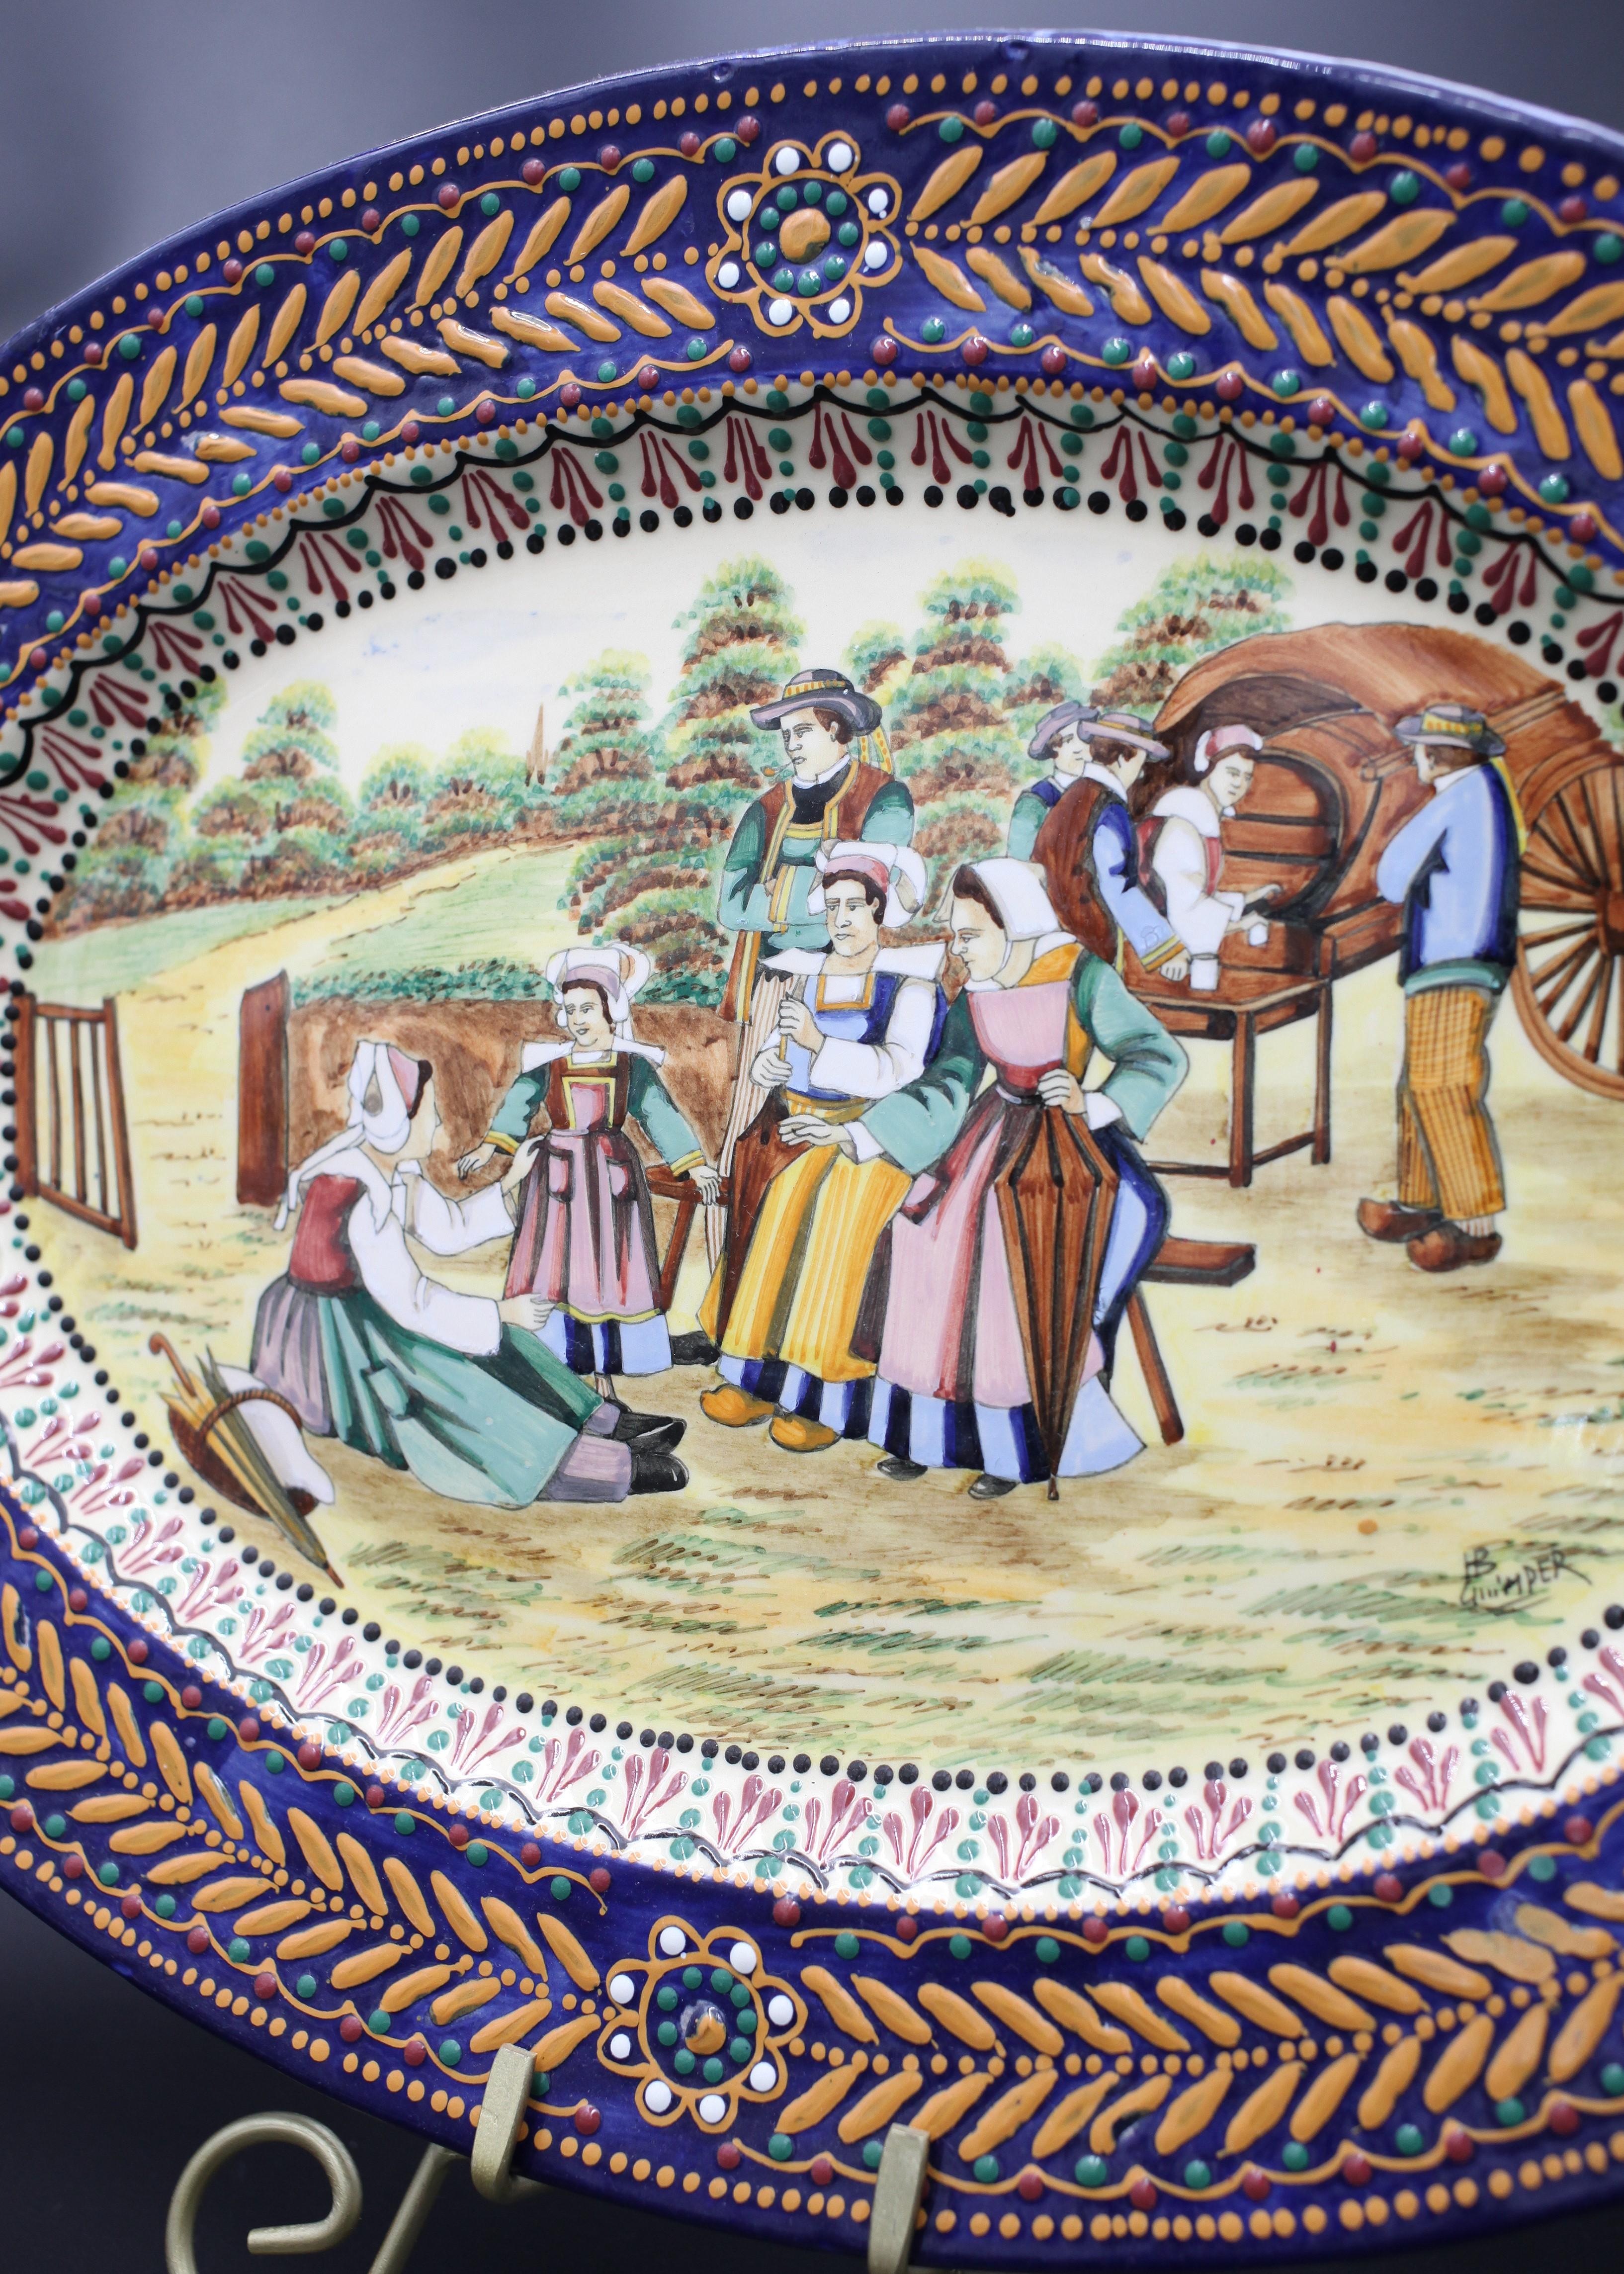 Diese elegante Platte mit ihren leuchtenden Farben aus der renommierten französischen Keramikmanufaktur HB Quimper ist ein Zeugnis für den Charme des Art déco des frühen 20. Jahrhunderts. Die ovale Platte ist mit einem komplizierten Broderie-Muster